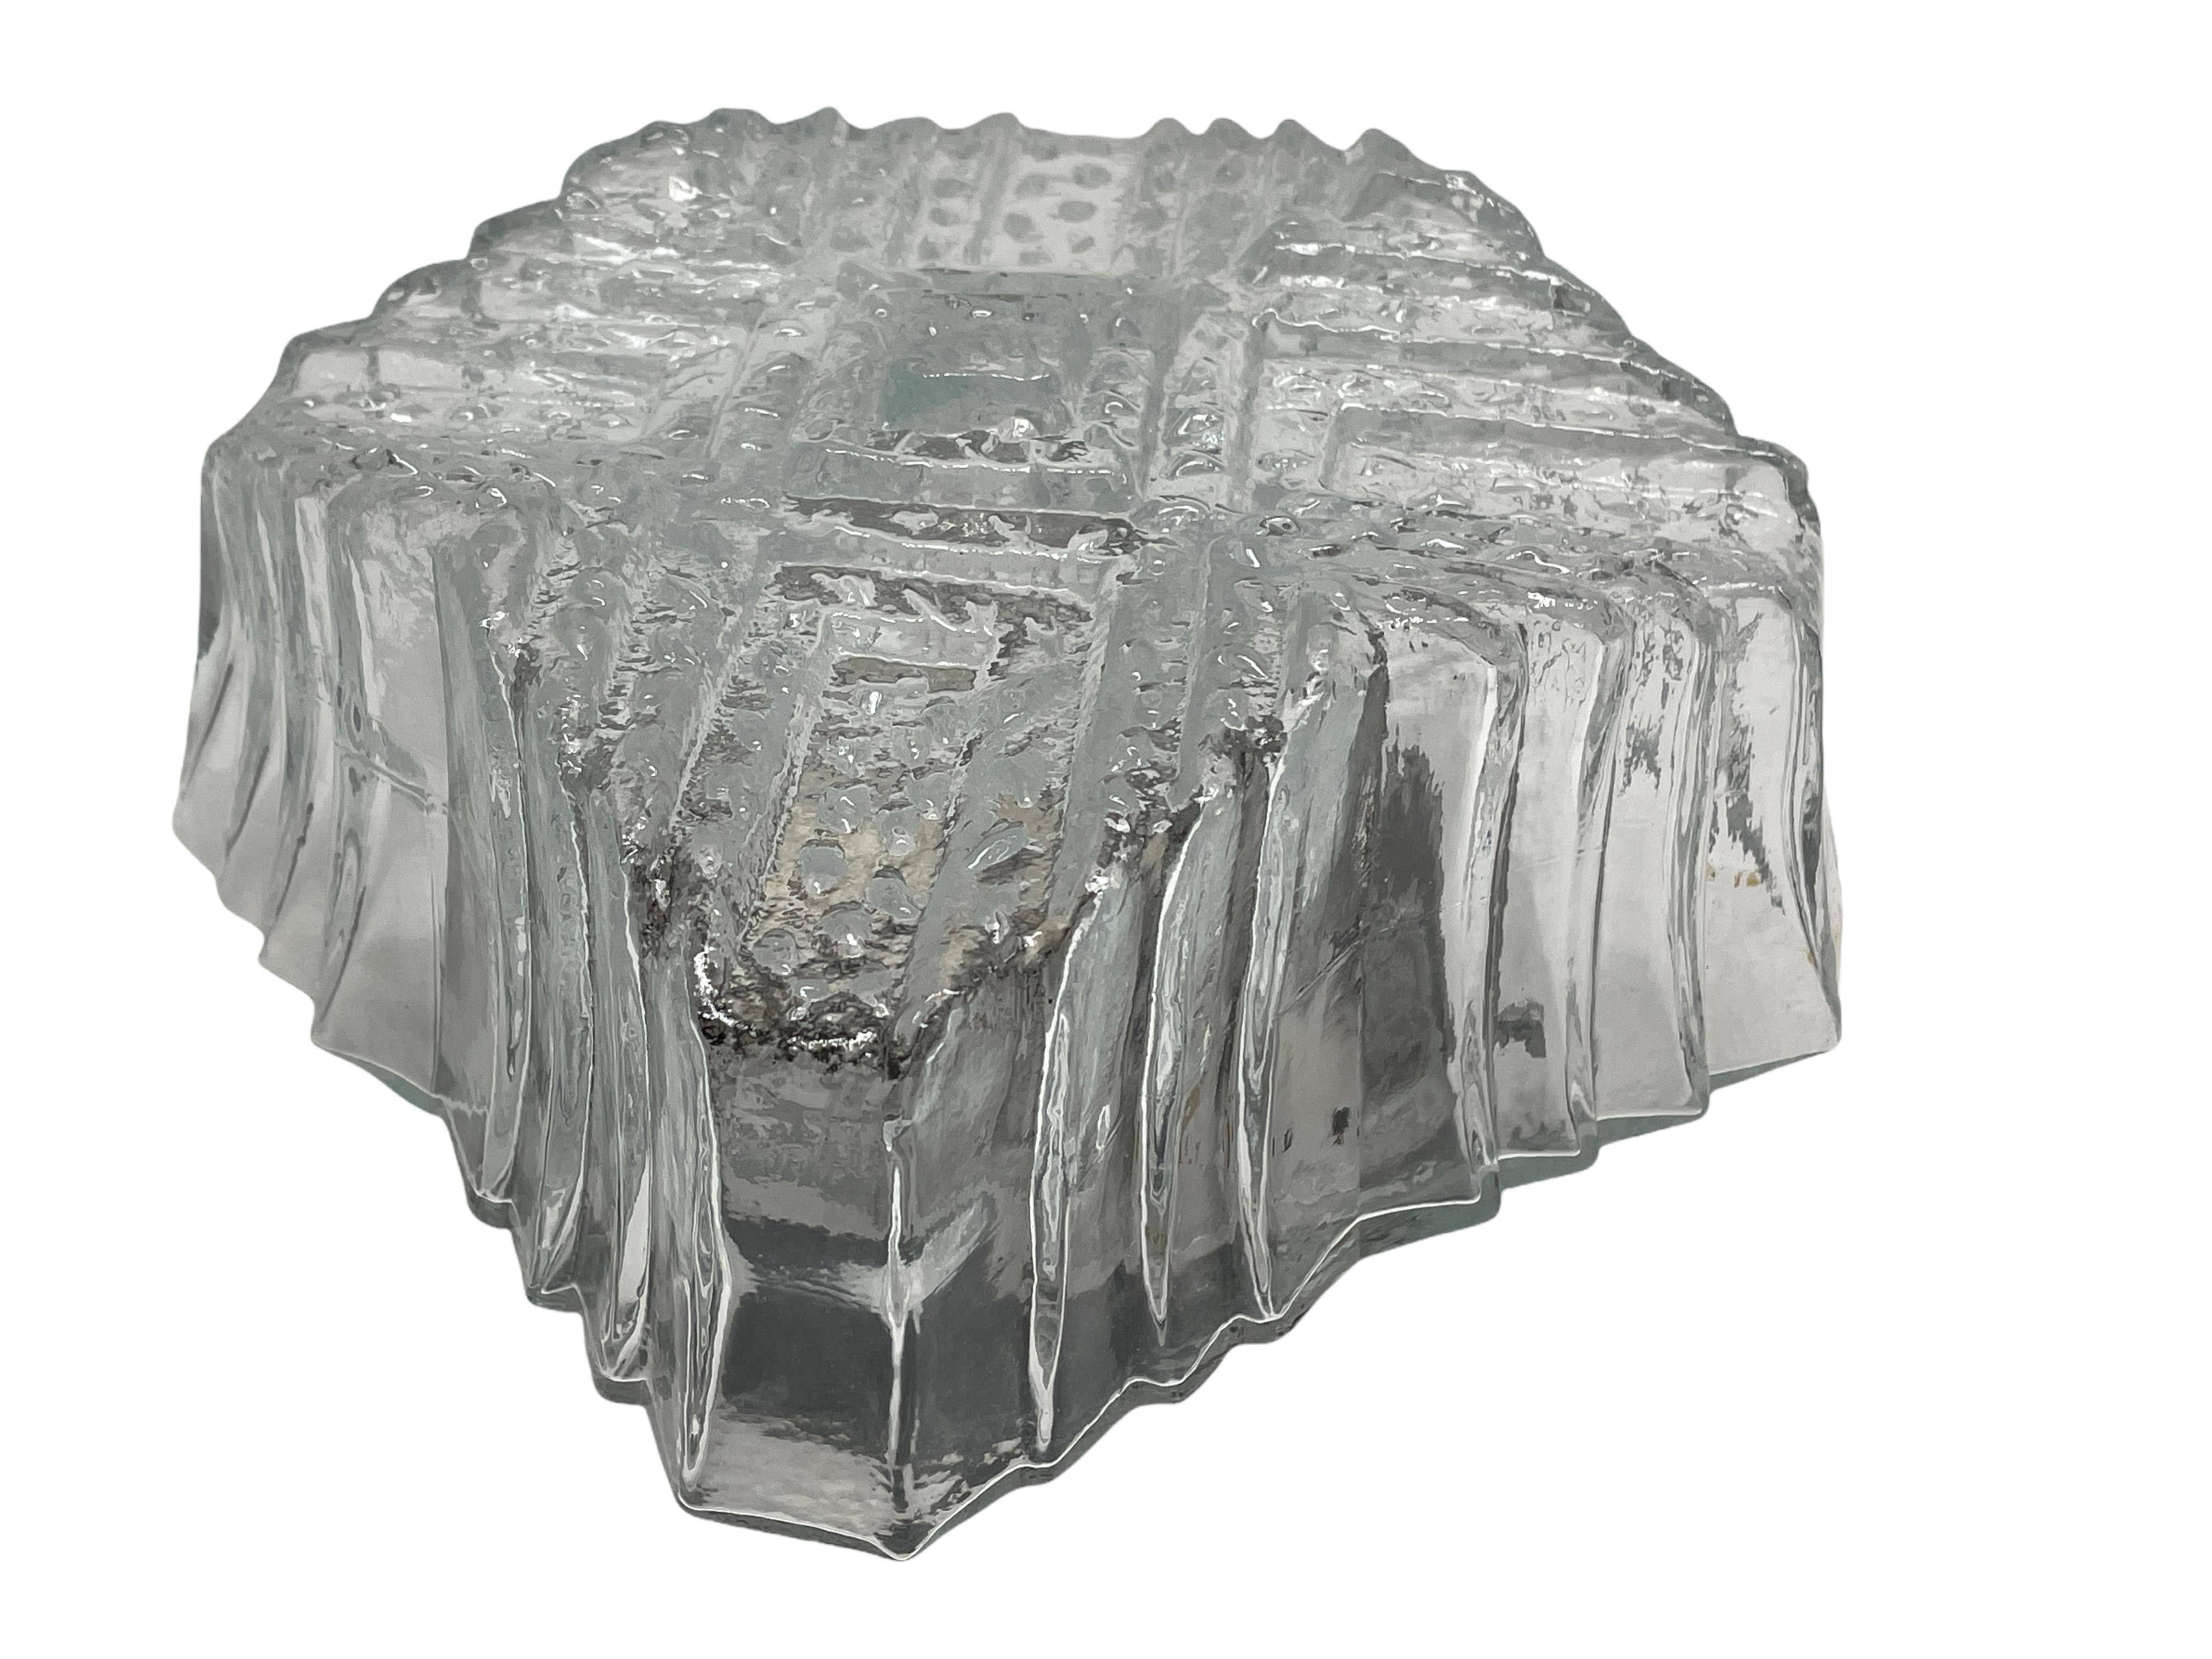 Une petite monture encastrée d'Allemagne. Magnifique verre en forme d'iceberg sur un support en métal. Le montage encastré nécessite une ampoule européenne E27 Edison, jusqu'à 60 watts. Une belle addition à n'importe quelle pièce.